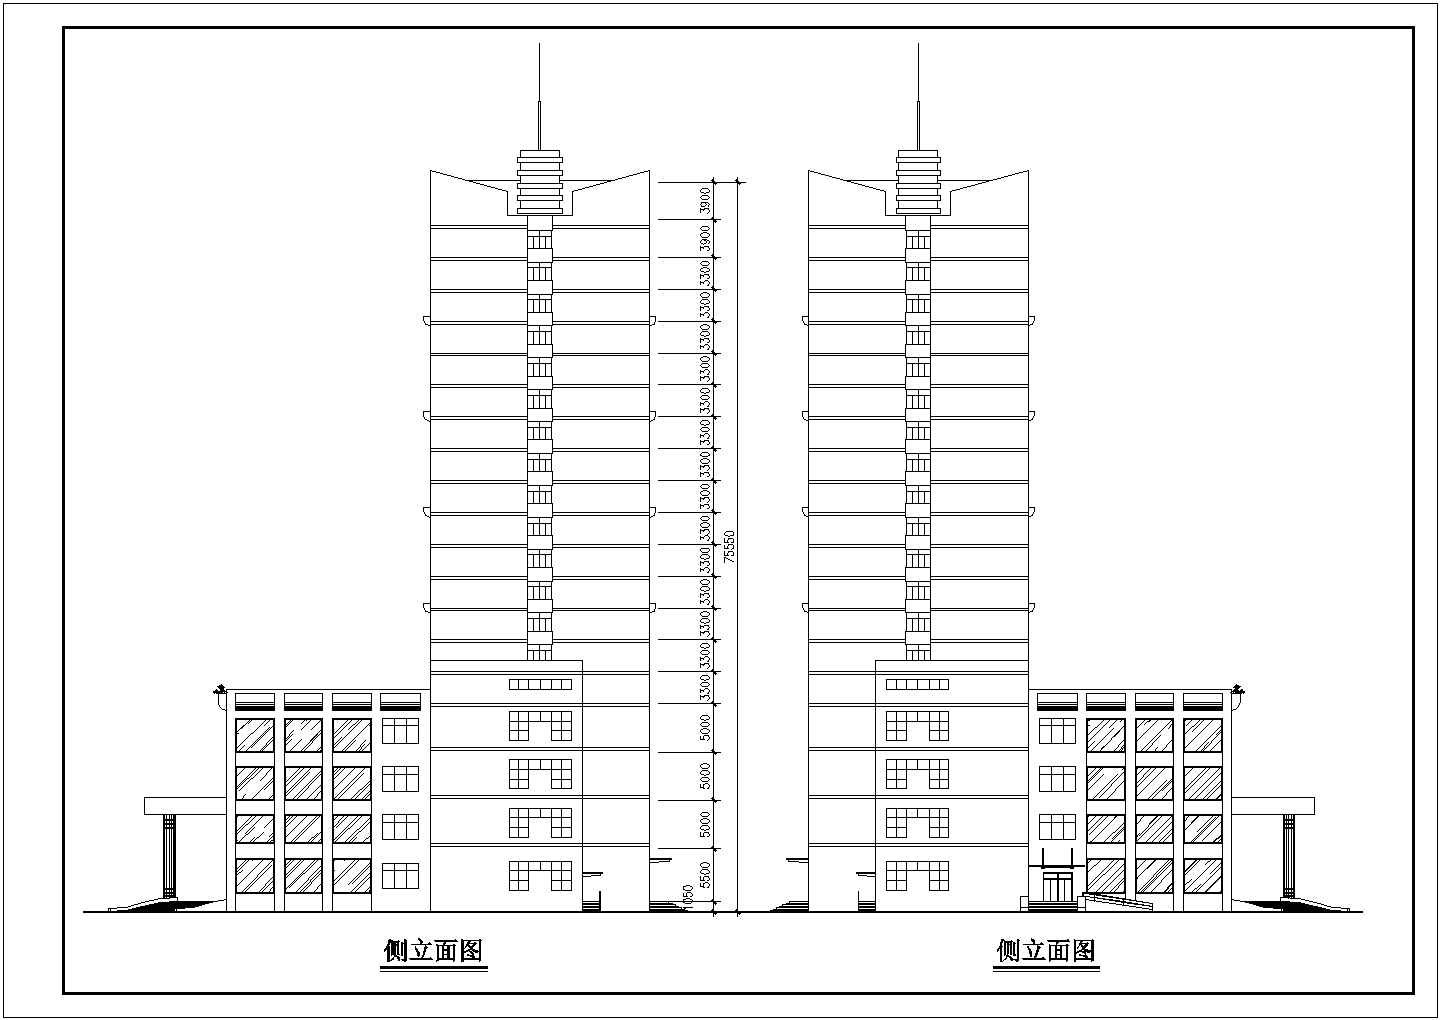 香格里啦高层酒店全套建筑施工方案图纸(含酒店地下层平面图)